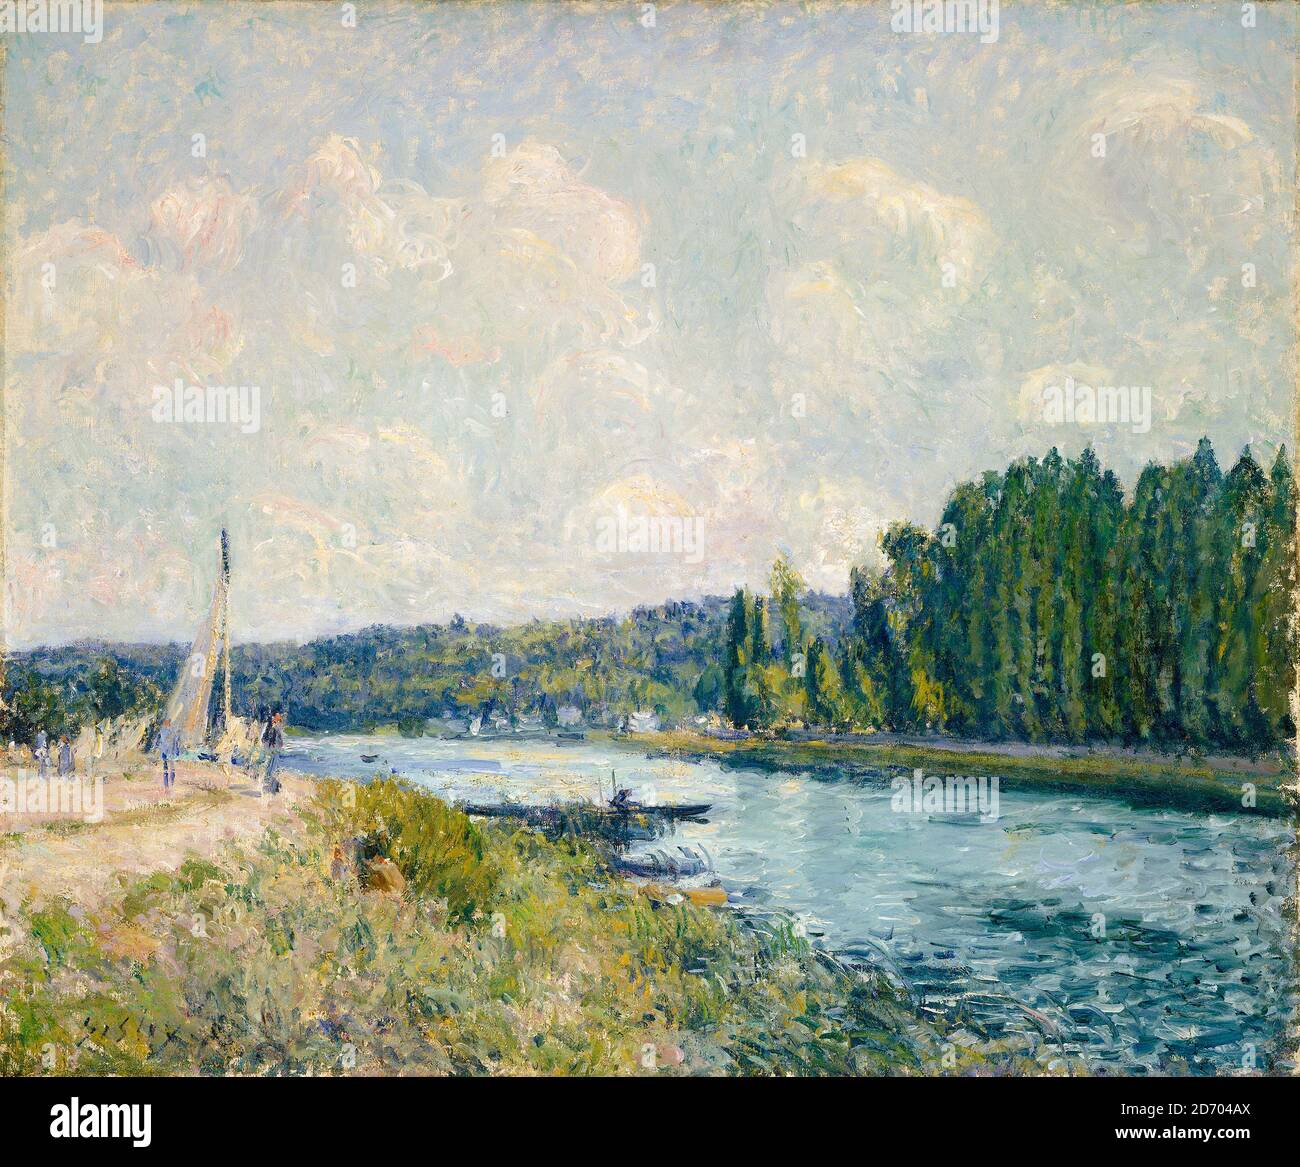 Alfred Sisley, les rives de l'Oise, peinture de paysage impressionniste, 1877-1878 Banque D'Images